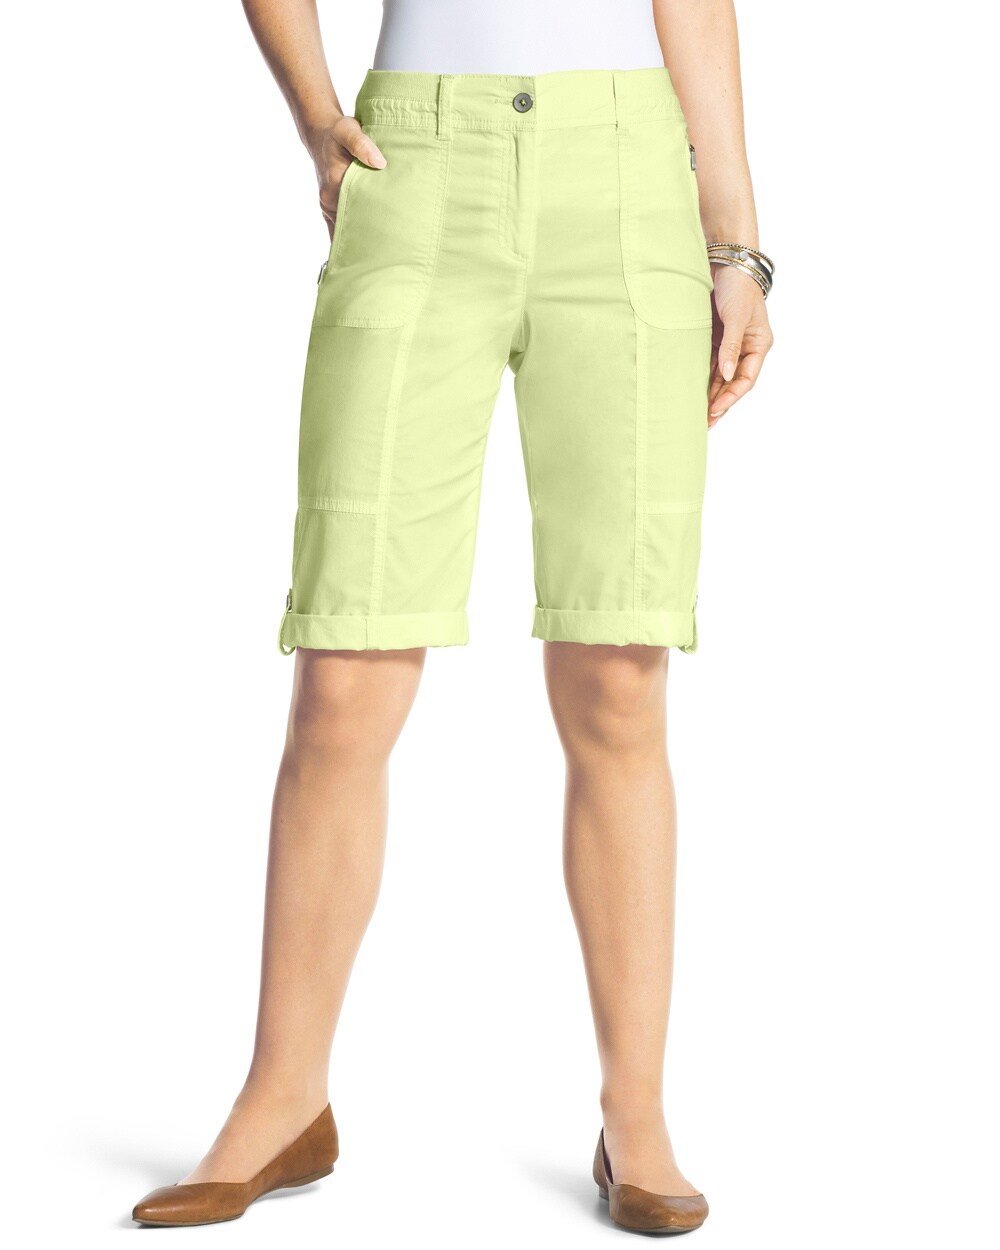 Casual Roll-Cuff Shorts - 13 Inch Inseam